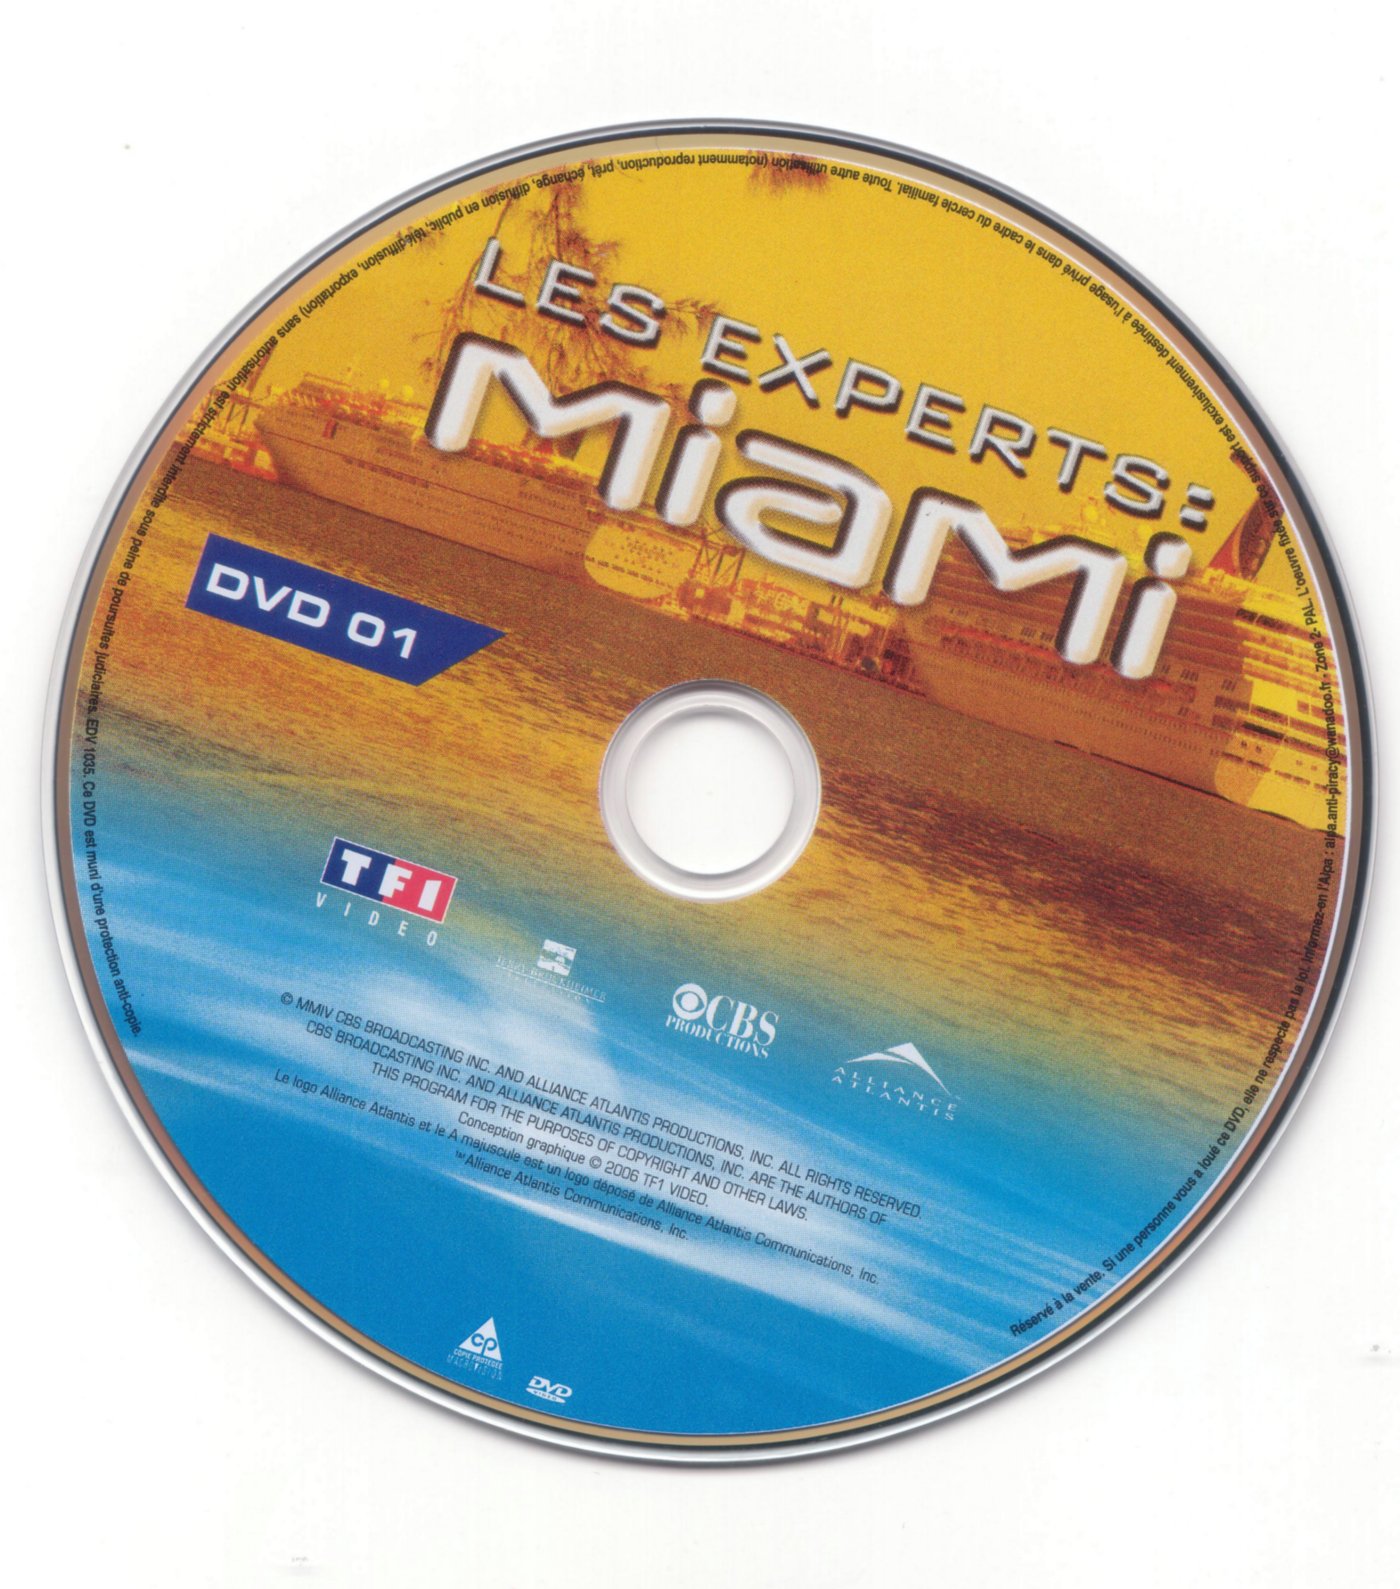 Les experts Miami Saison 3 dvd 1